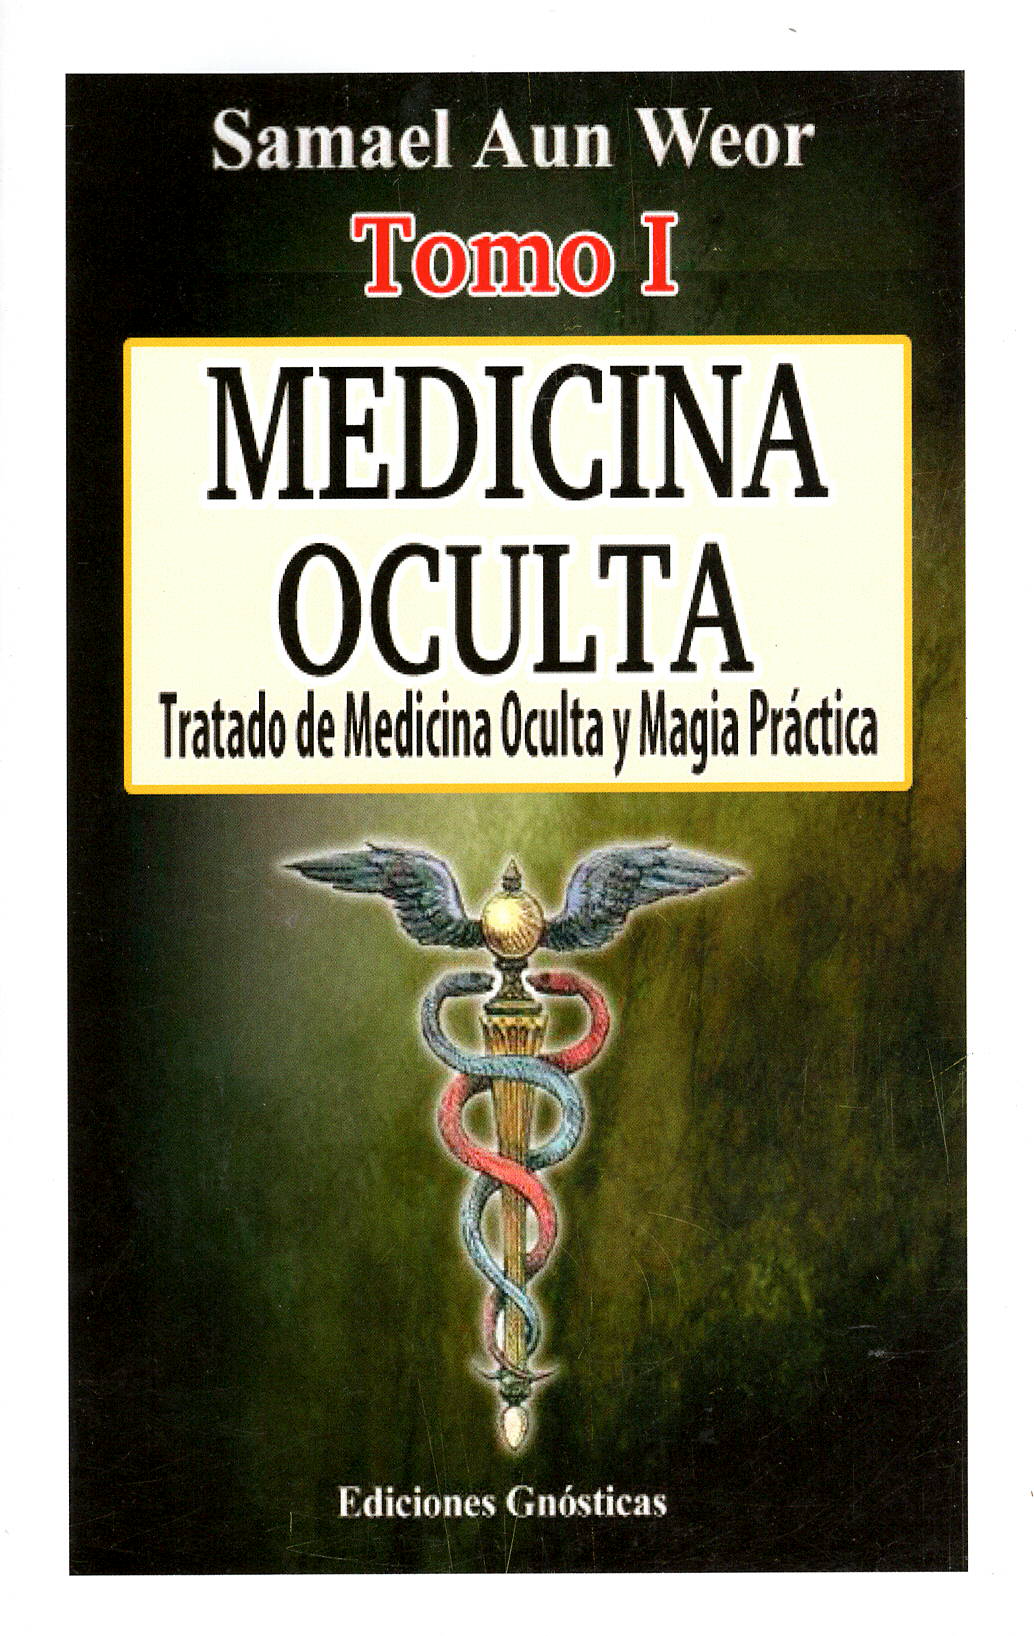 Tratado de Medicina Oculta y Magia Práctica, por Samael Aun Weor